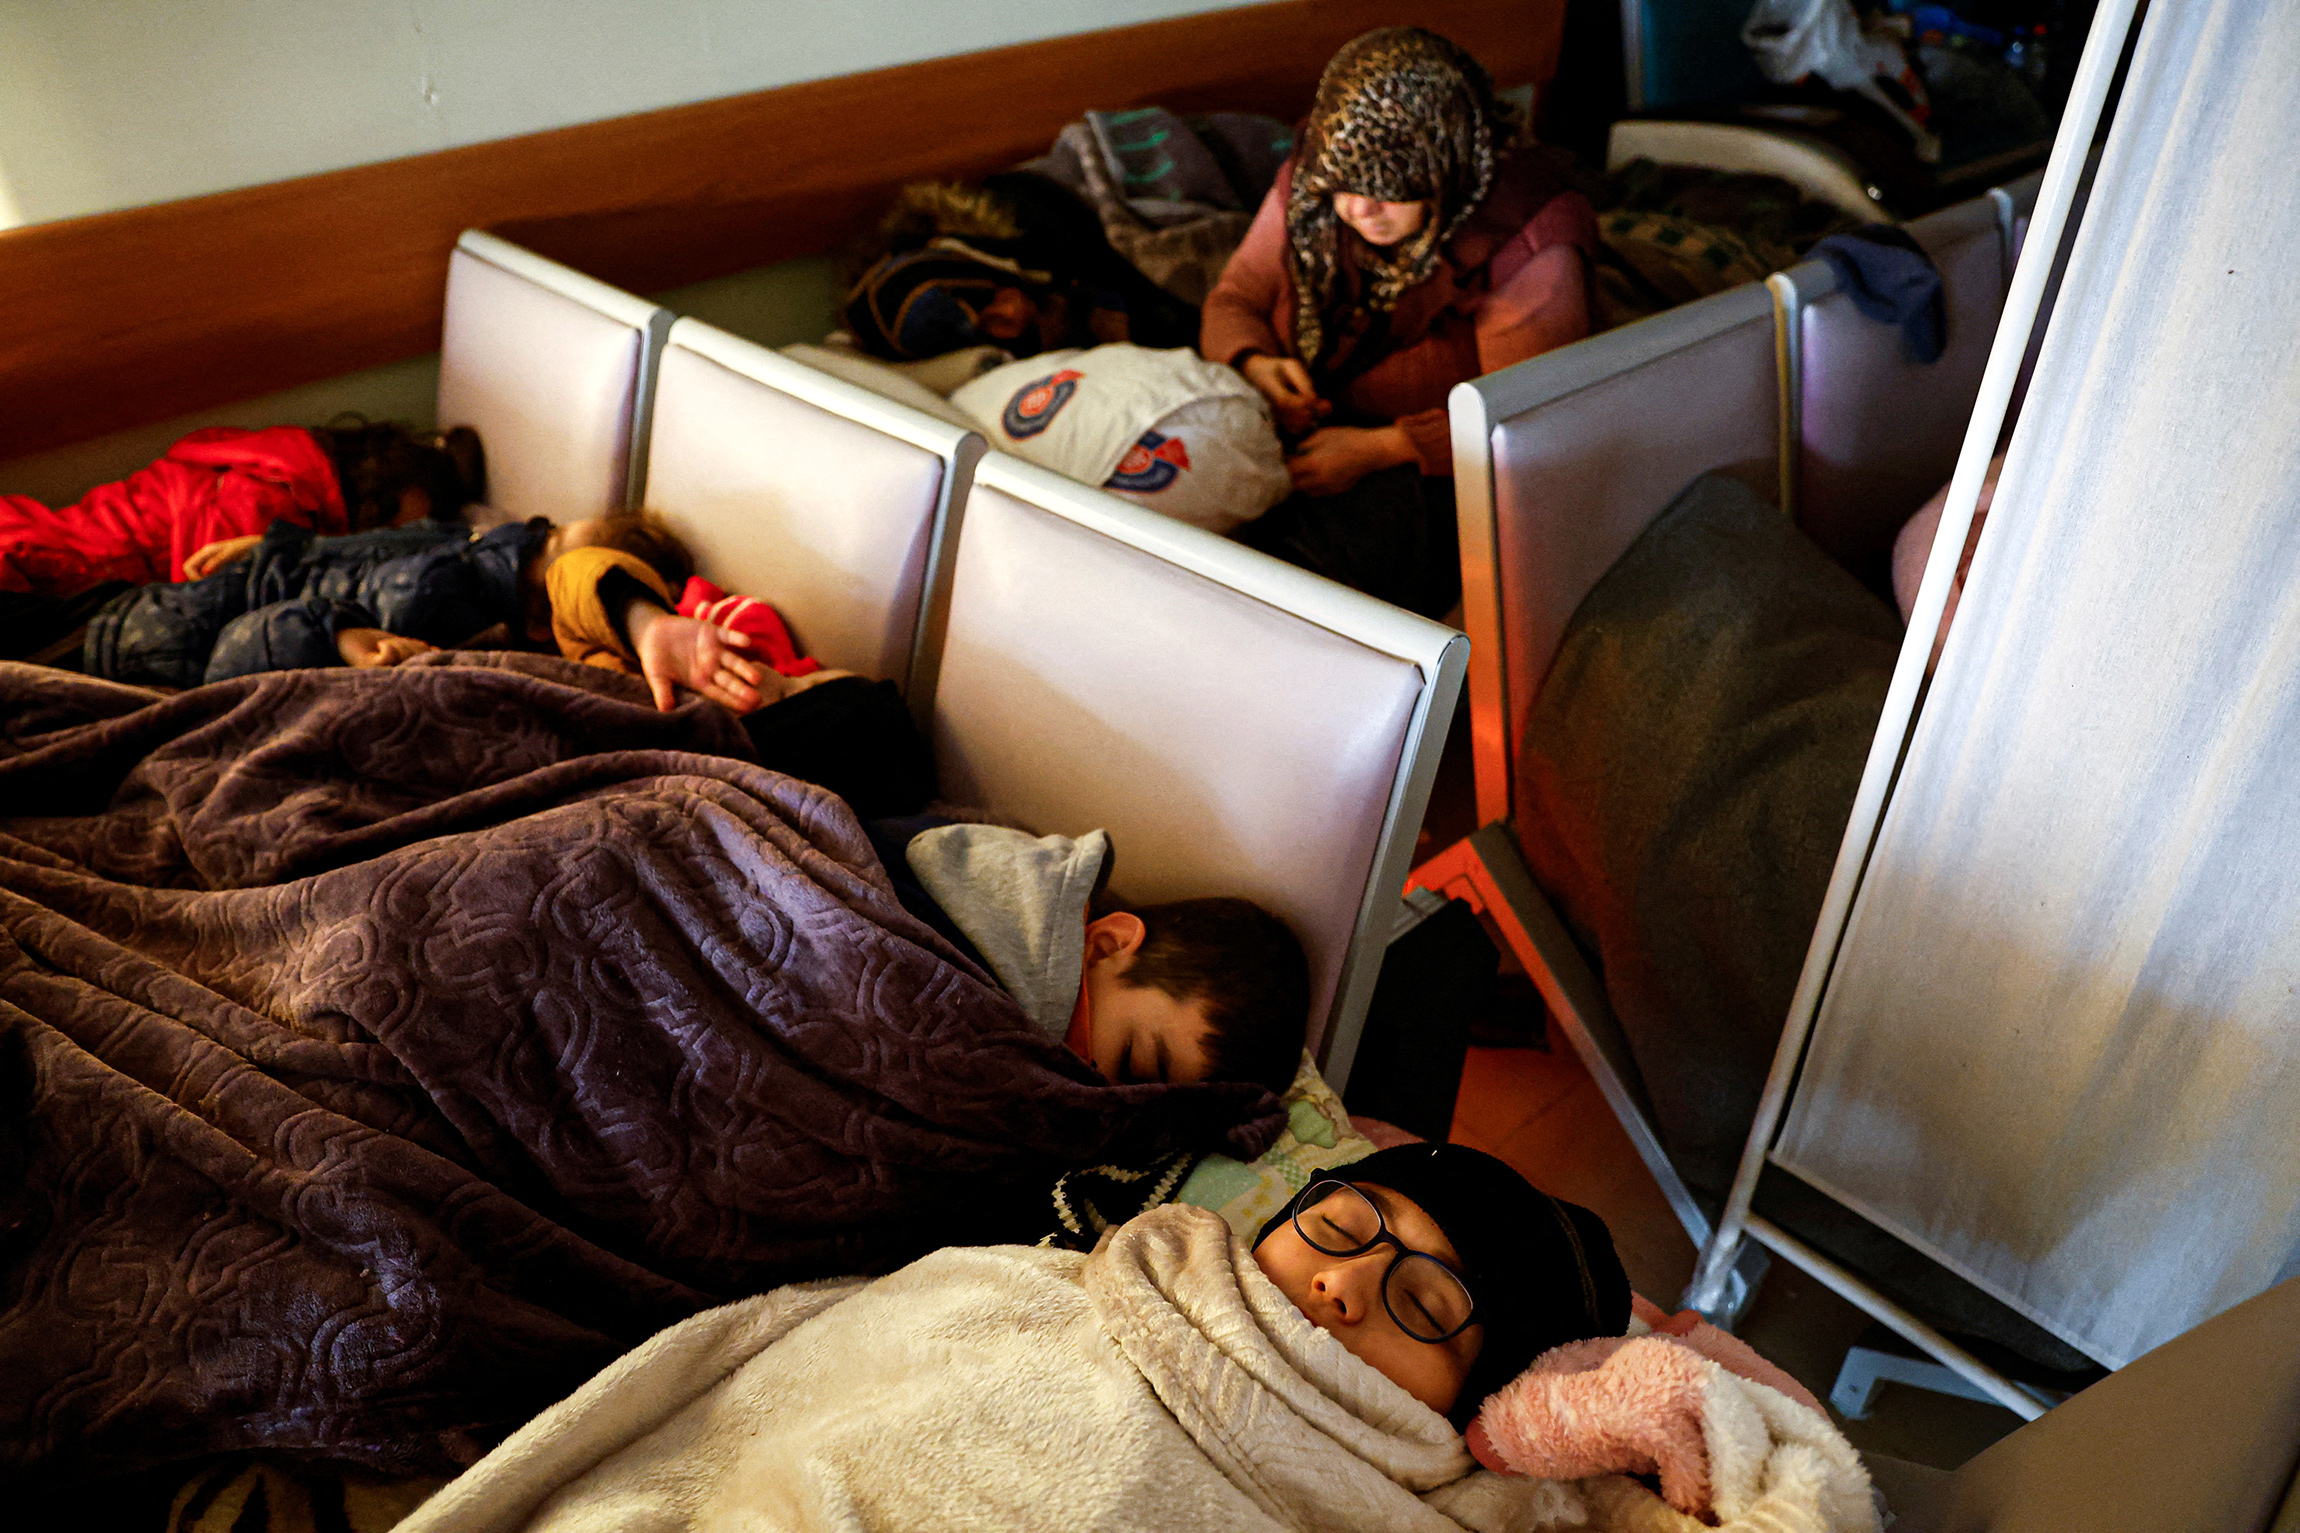 Выжившие после землетрясения&nbsp;&mdash; в больнице в Кахраманмараше. По оценке Министра здравоохранения Турции Фахреттина Коджи, на лечении в медучреждениях страны сейчас находятся более 19 тыс. человек, из них 3606 лежат в реанимации.

В разрушенных районах Турции были созданы мобильные аптеки-грузовики: медики раздают нуждающимся лекарства. Тяжелораненых перевозят в больницы Стамбула или близлежащих провинций.